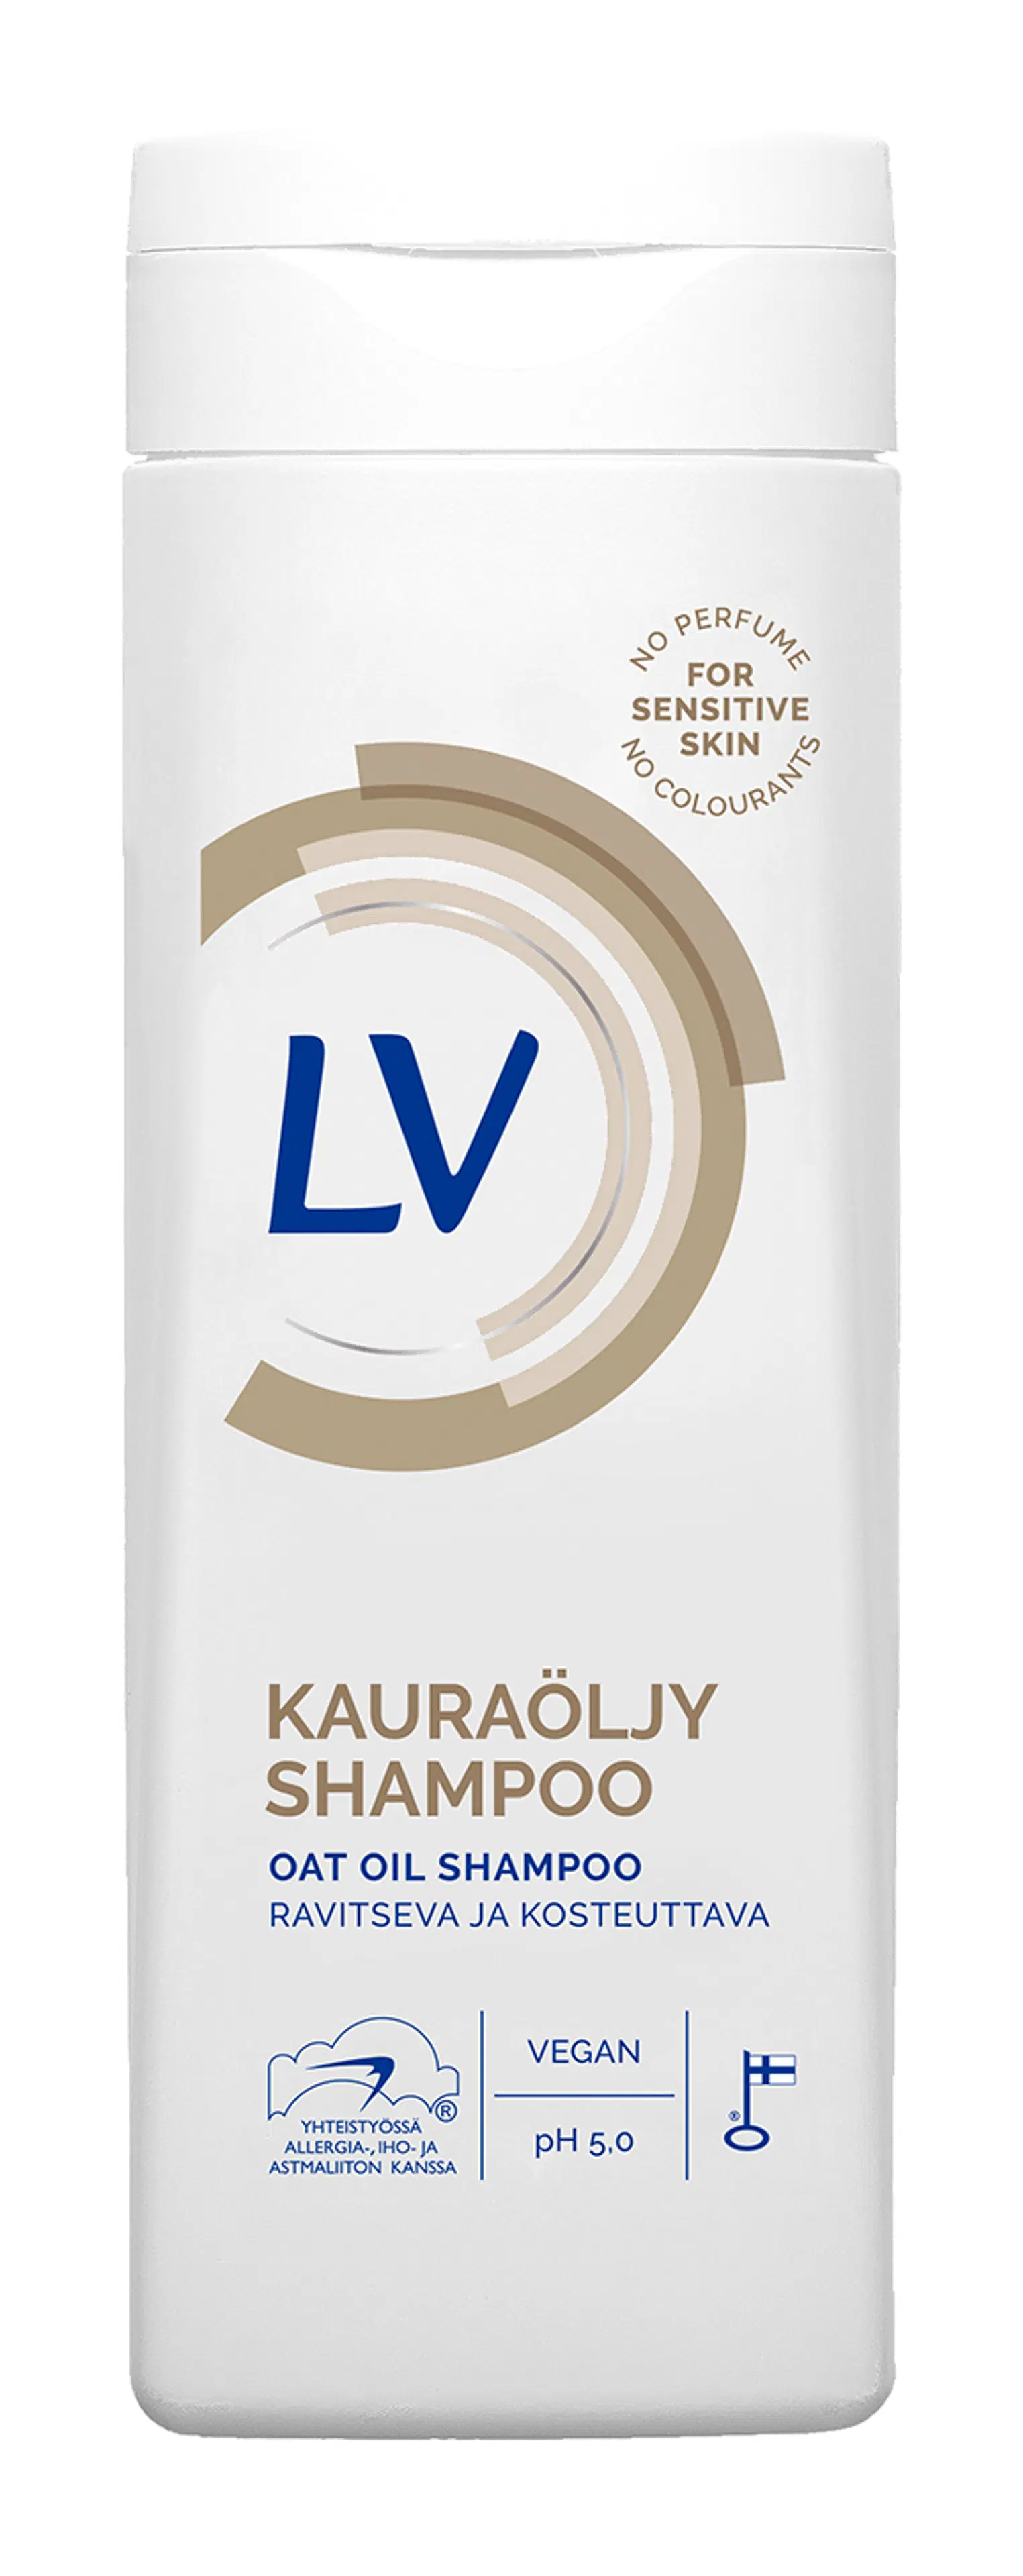 LV 250ml  Ravitseva ja kosteuttava kauraöljy shampoo